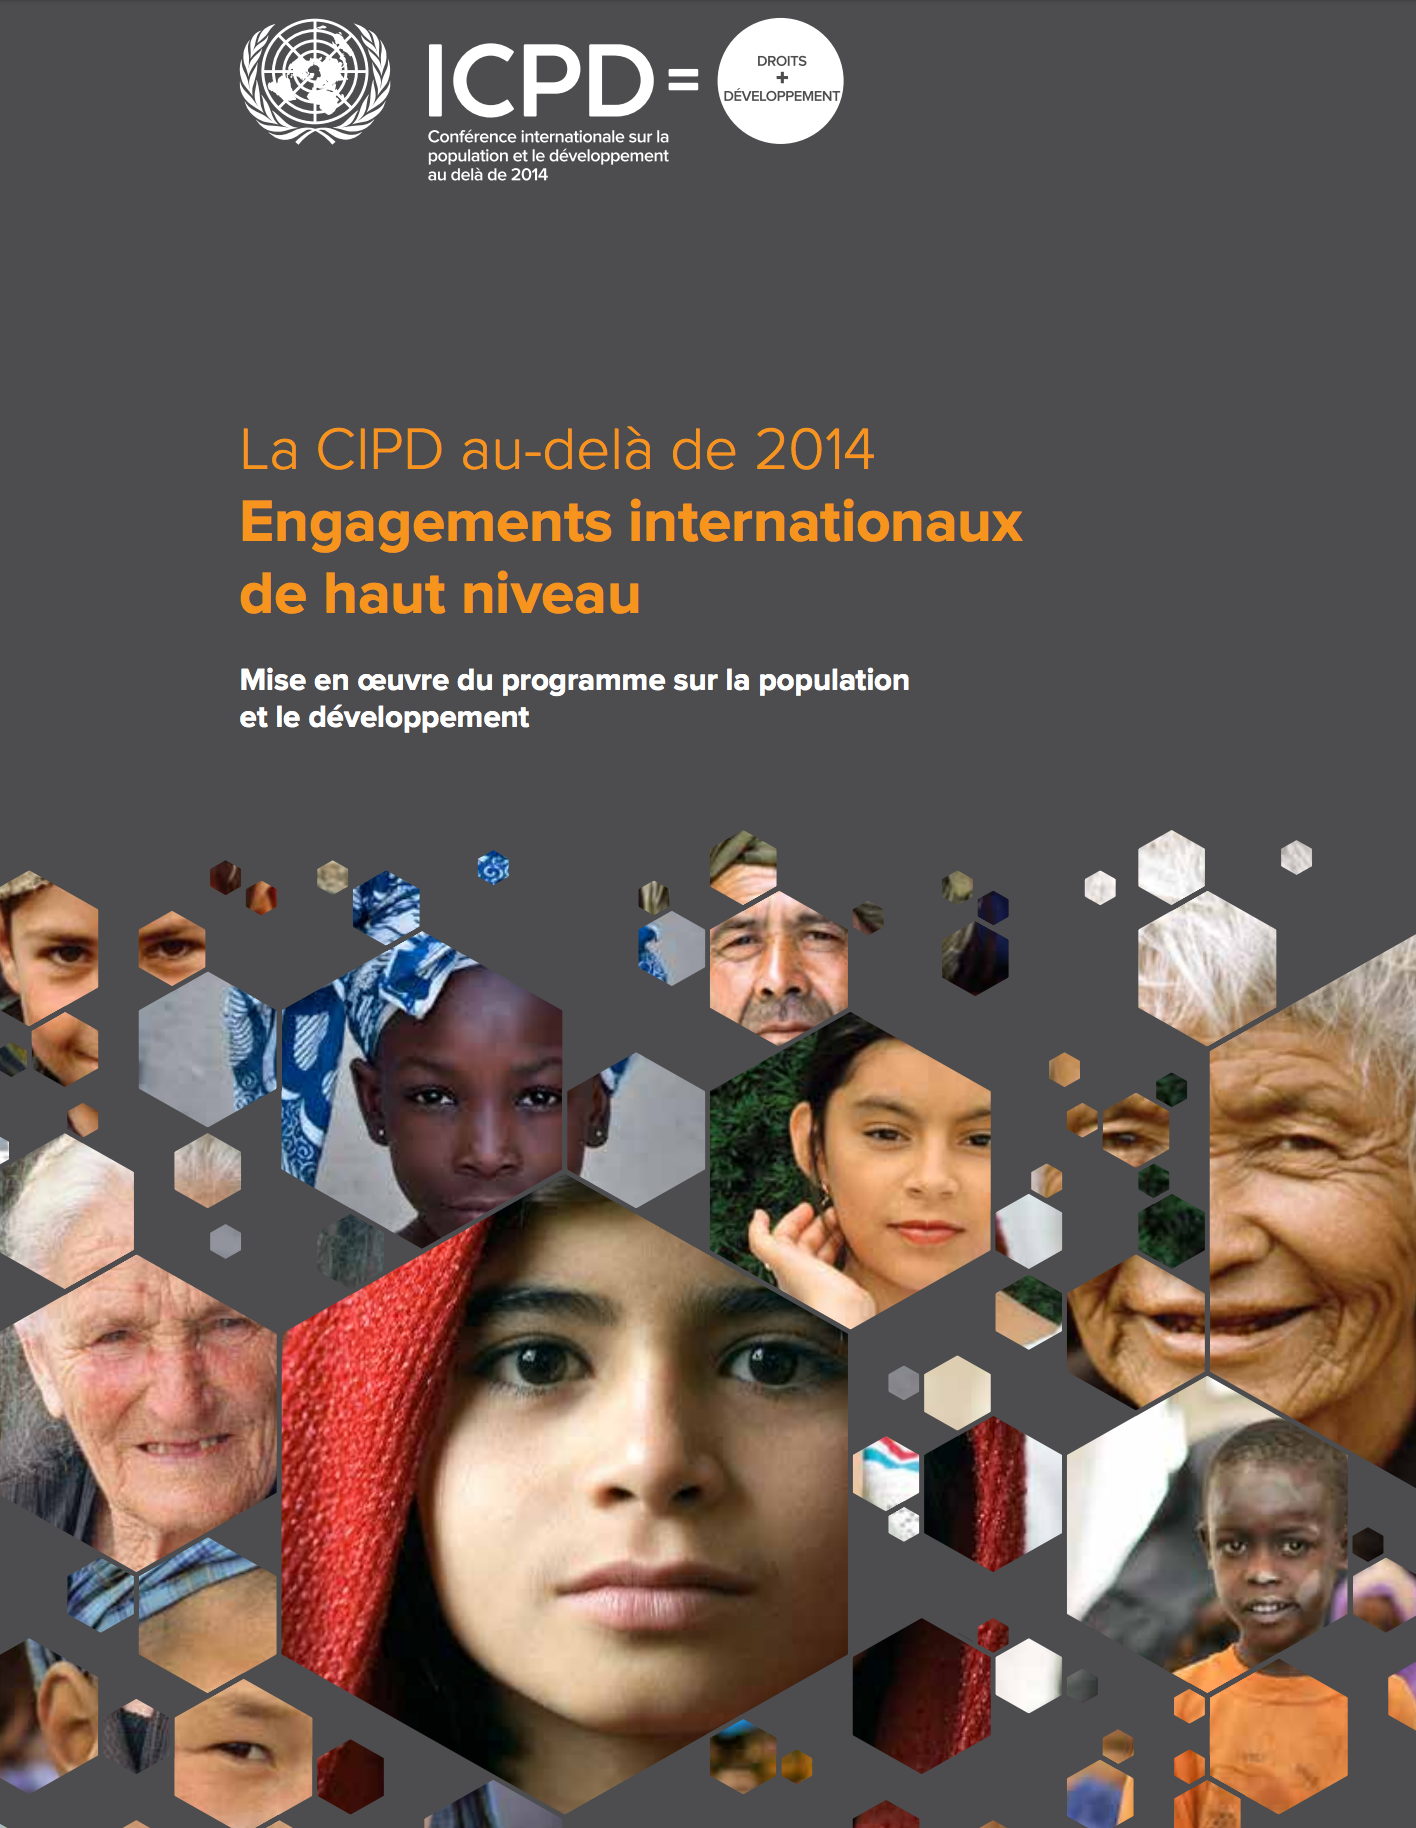 La CIPD au-delà de 2014 Engagements internationaux de haut niveau